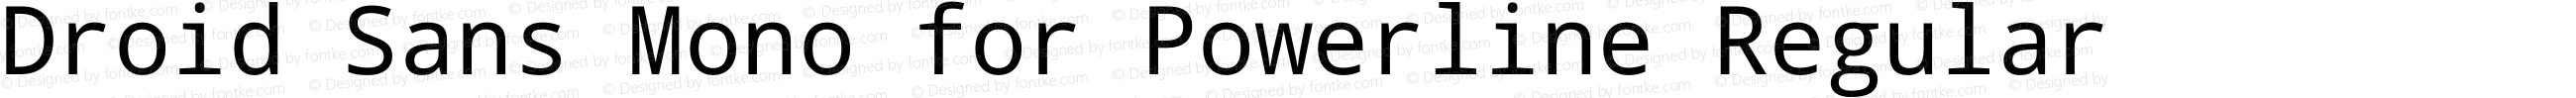 Droid Sans Mono for Powerline Nerd Font Plus Octicons Plus Pomicons